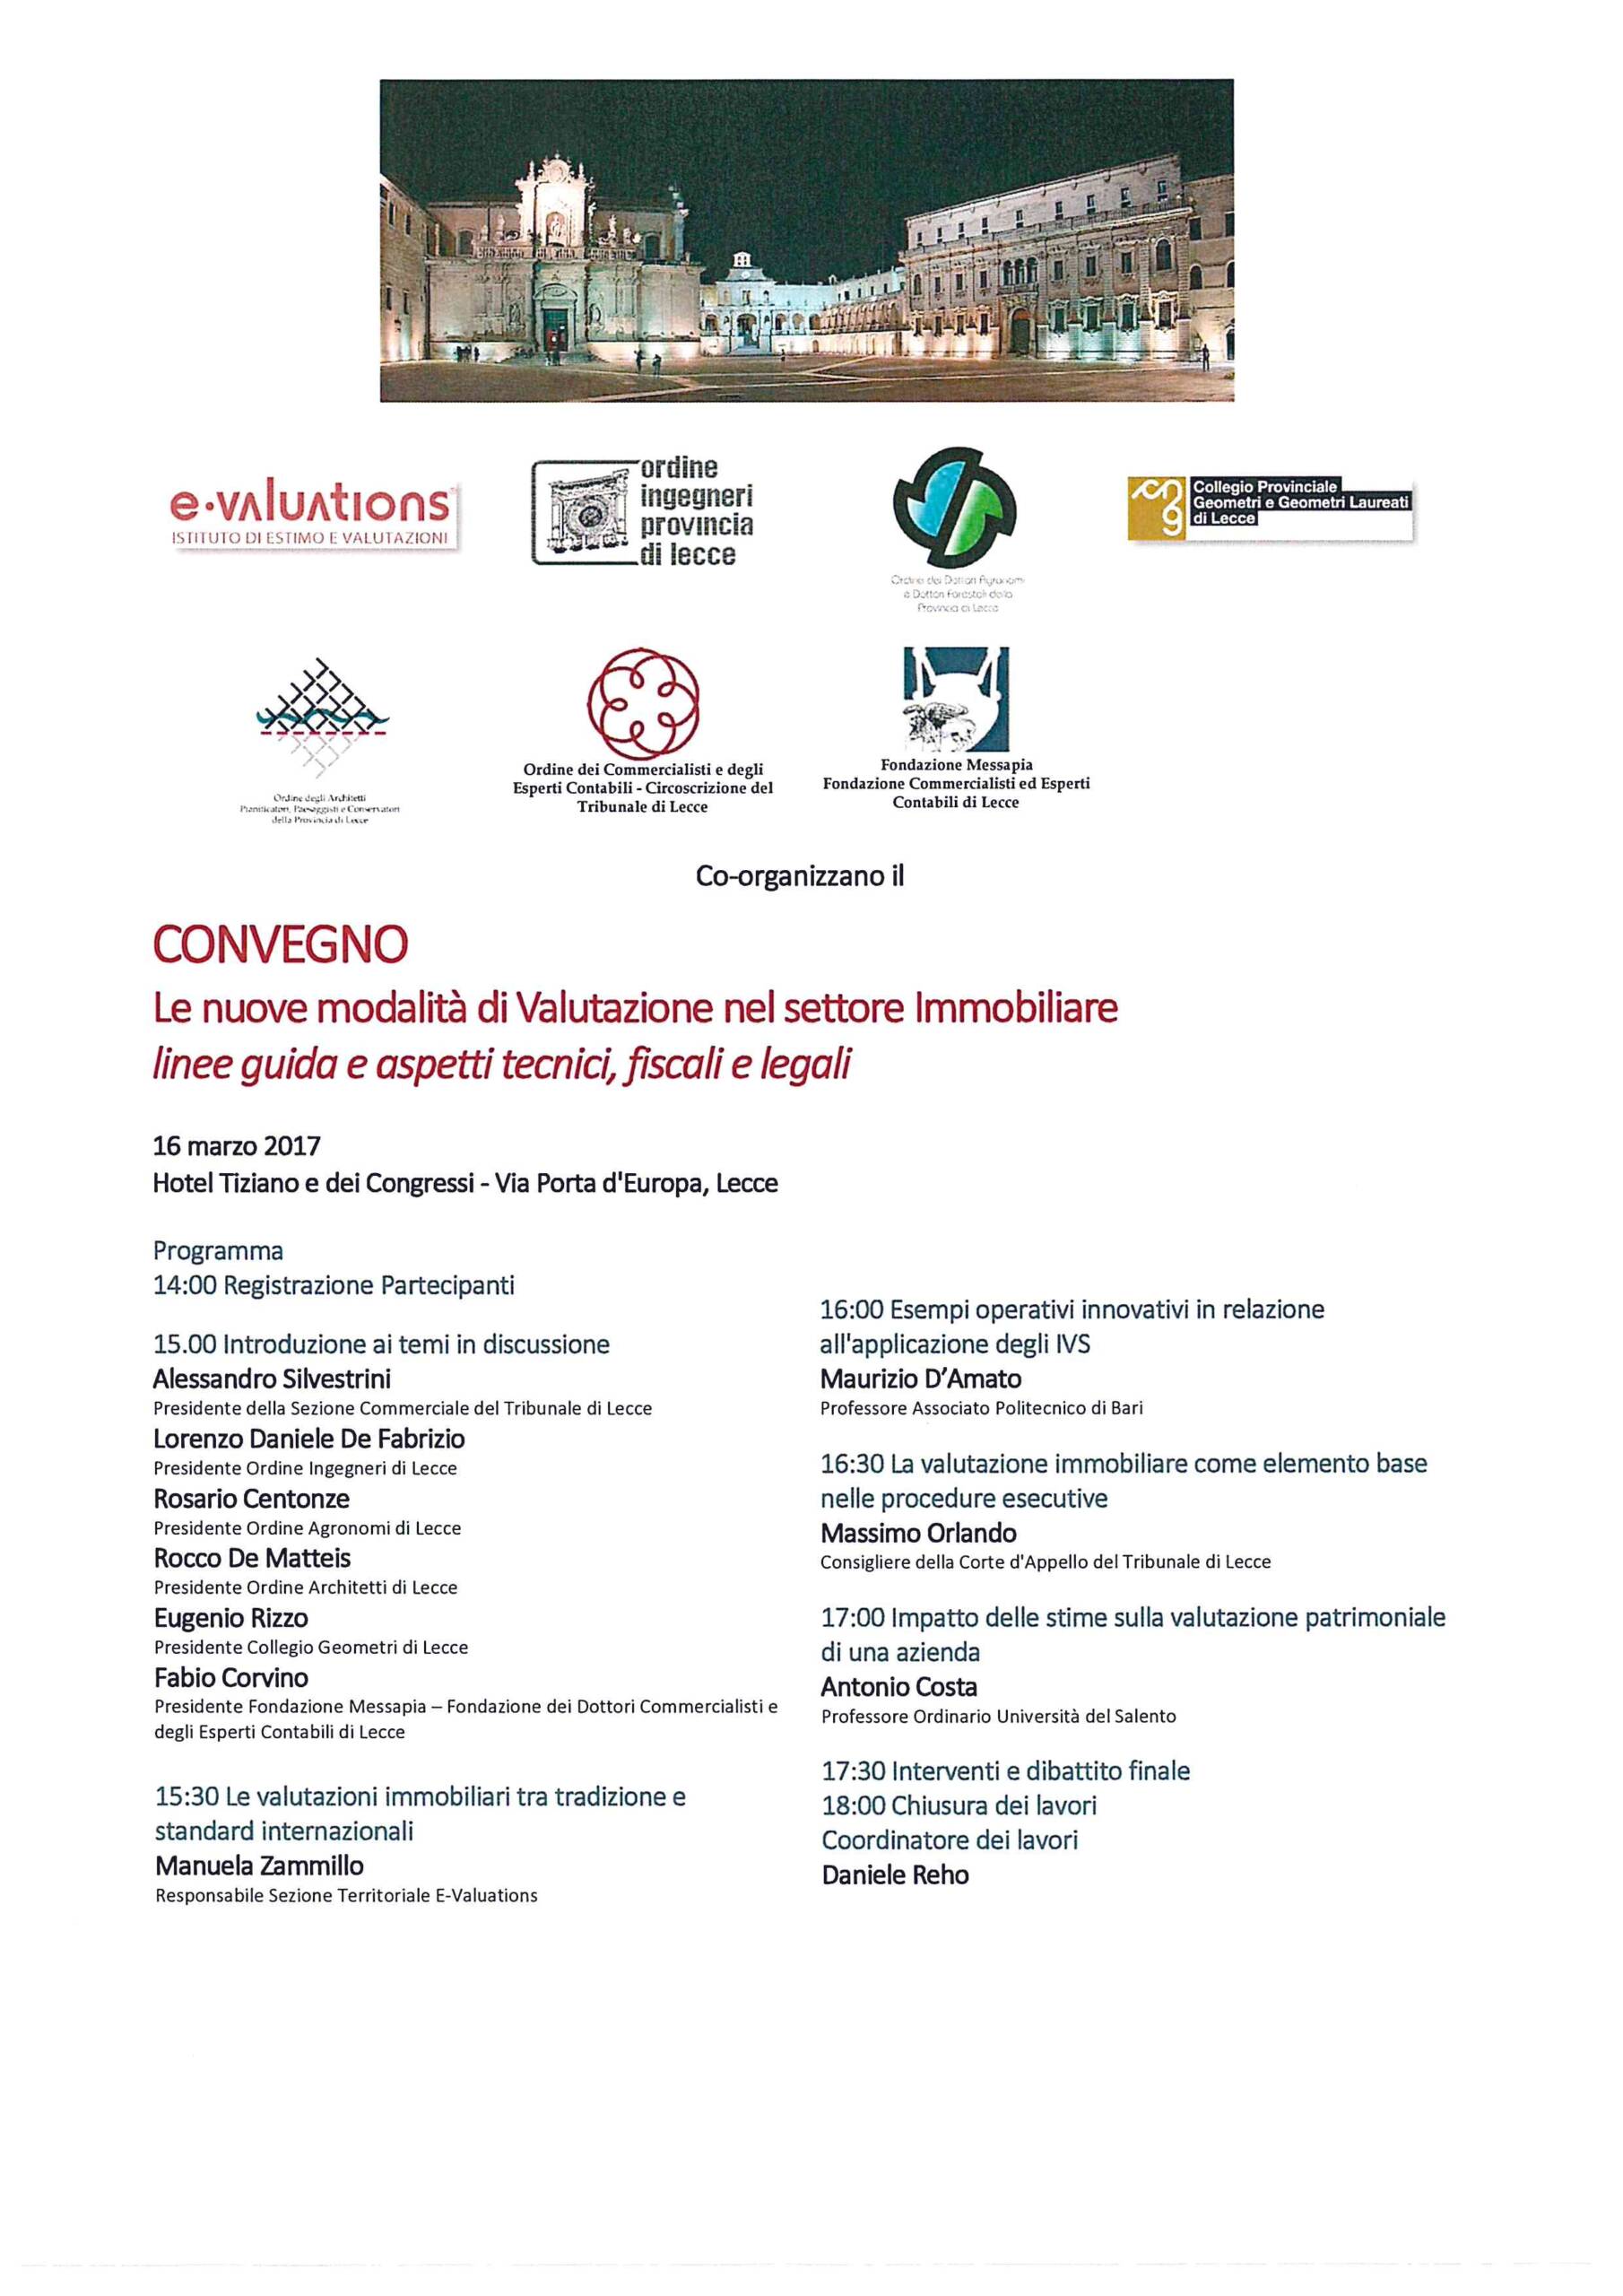 Convegno: Le nuove modalità di Valutazione nel settore Immobiliare – Lecce 16/03/2017